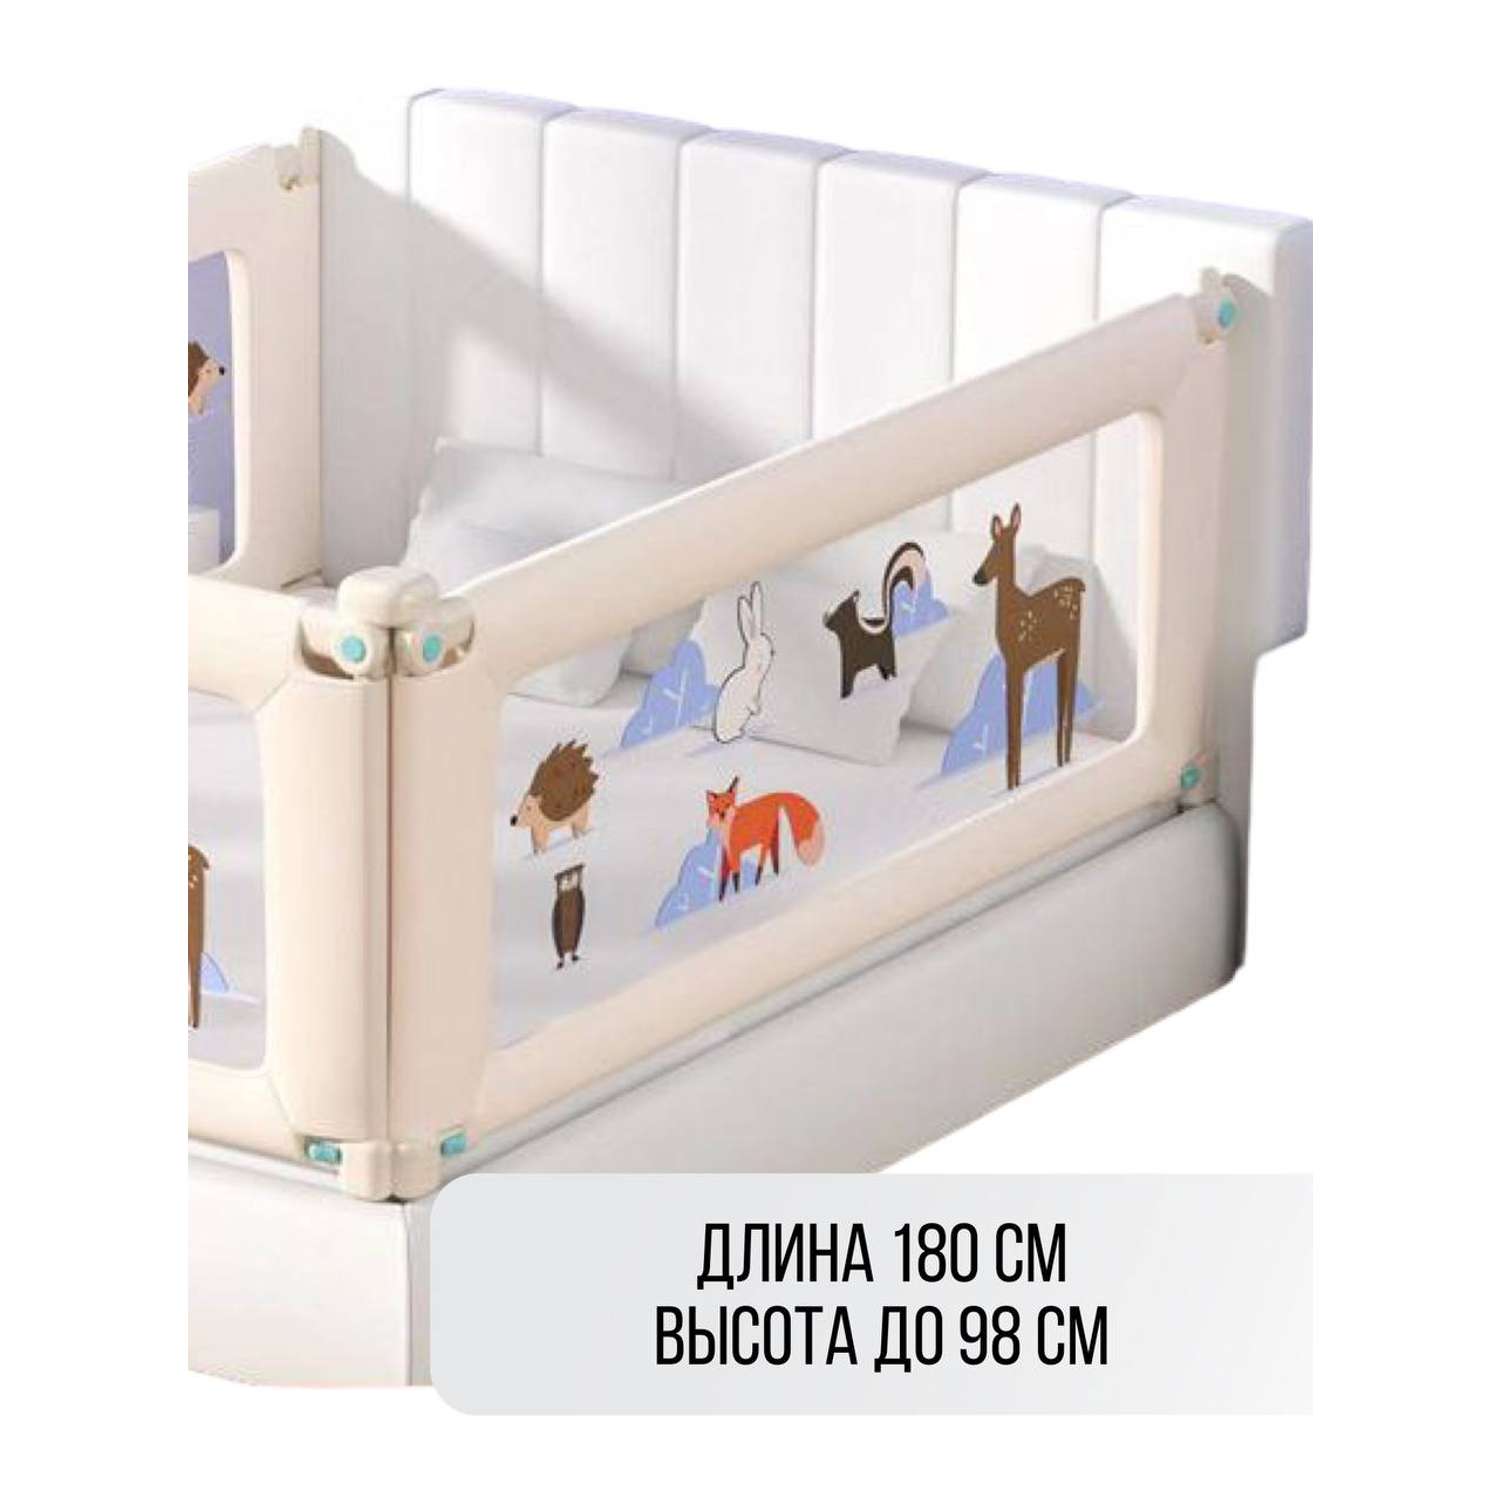 Барьер для кровати Safely and Soft Premium длиной 180см бежевый на одну сторону кровати - фото 1